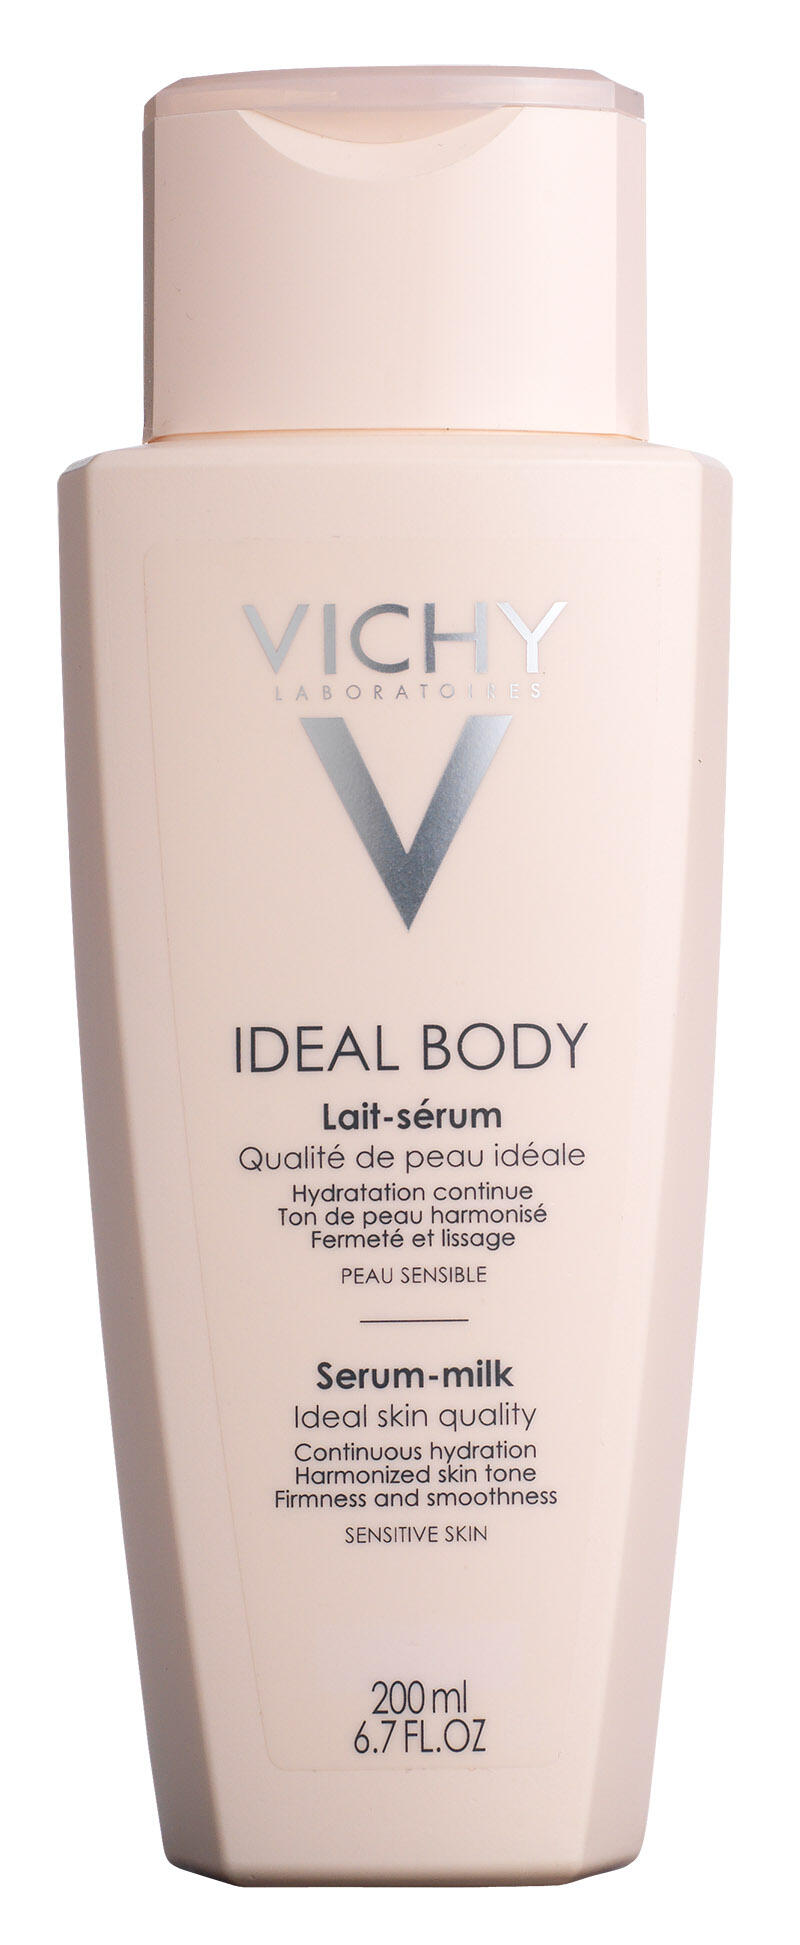 renovere ambition udkast Test: Vichy Ideal body Serum-milk | Forbrugerrådet Tænk